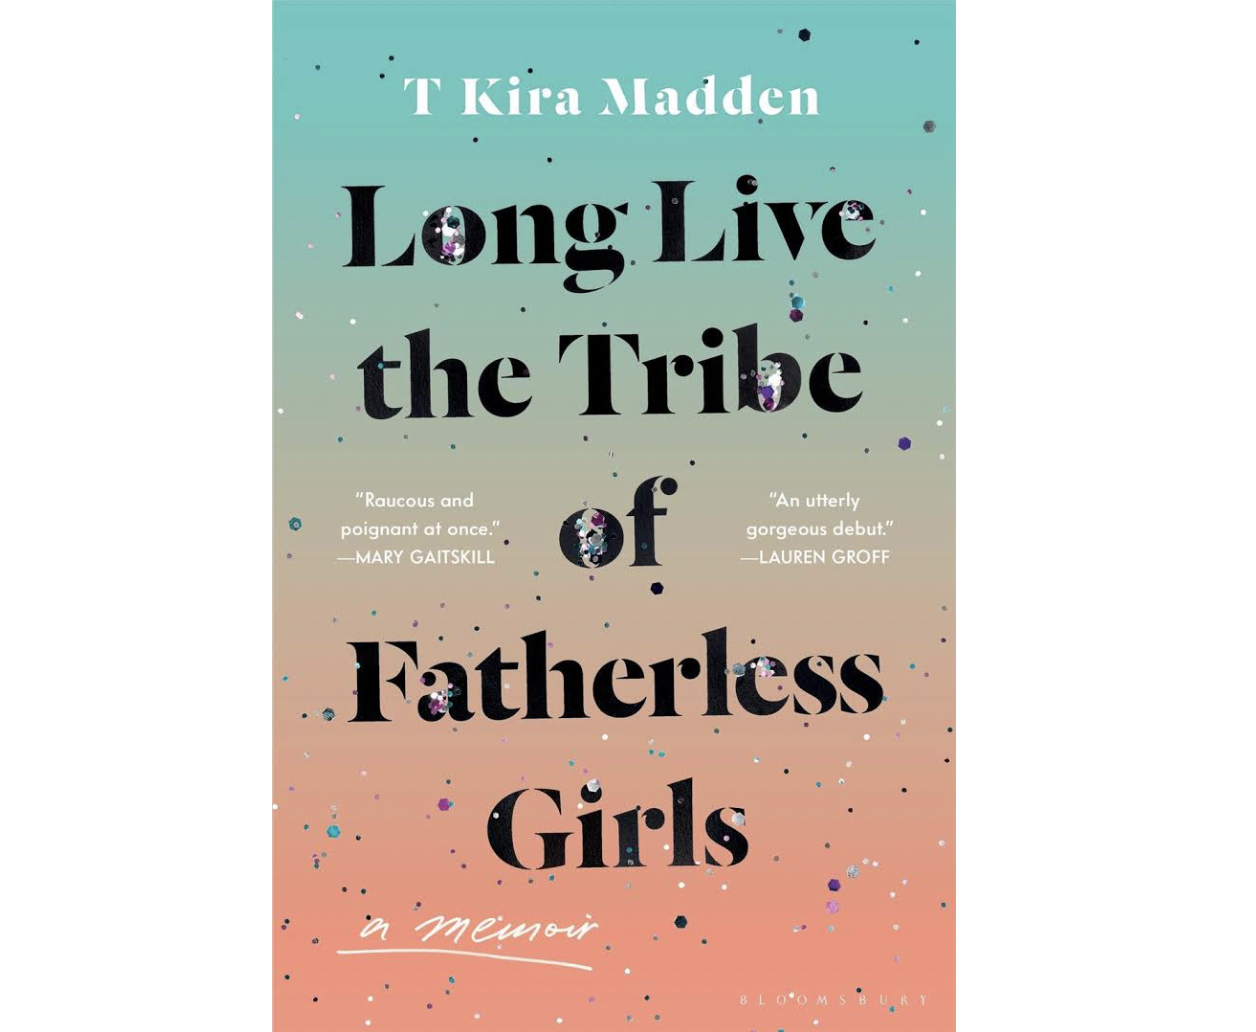 Book written by T Kira Madden